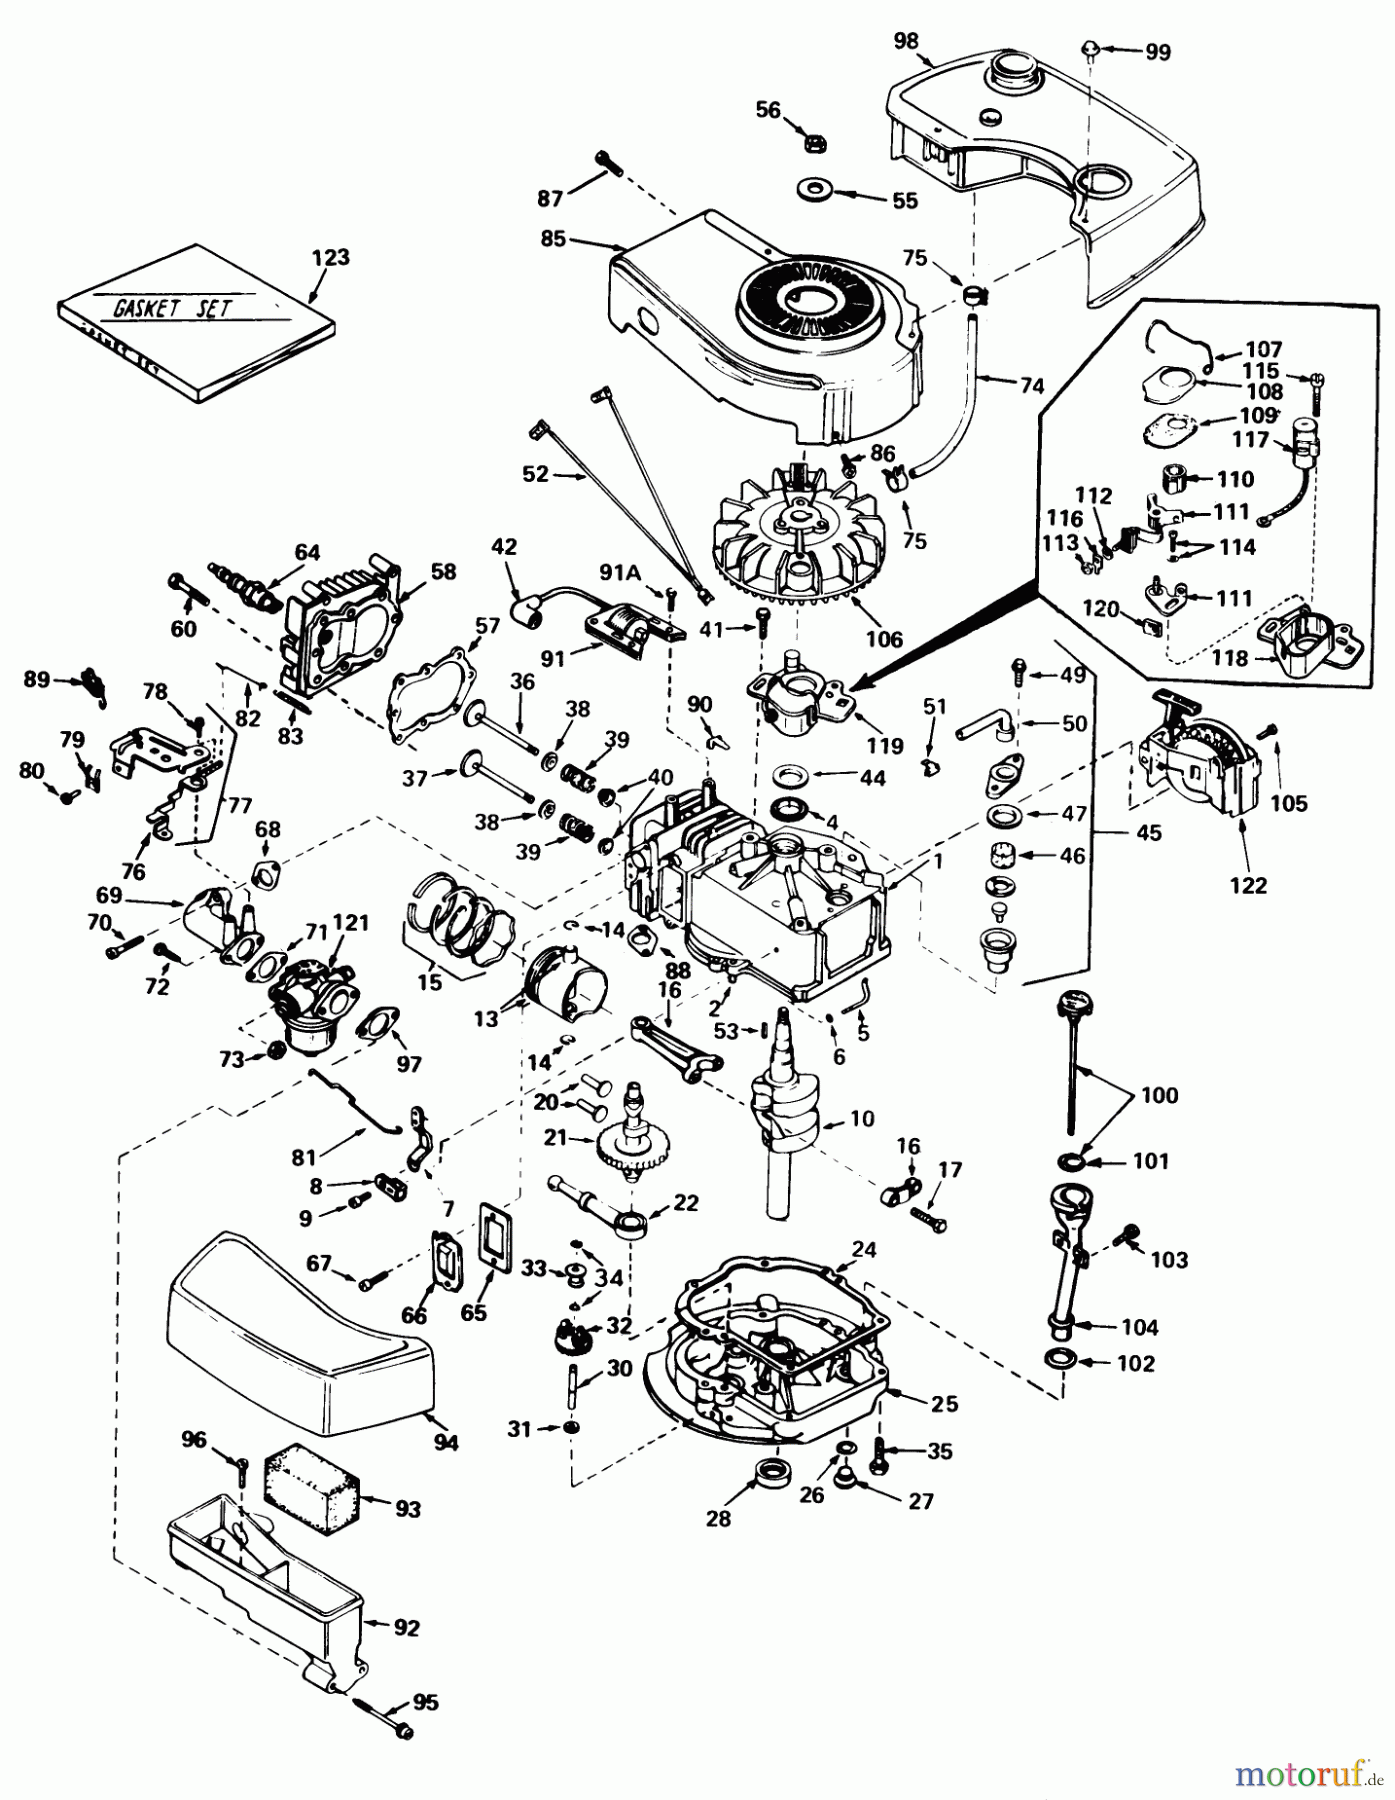  Toro Neu Mowers, Walk-Behind Seite 1 20705 - Toro Lawnmower, 1979 (9000001-9999999) ENGINE TECUMSEH MODEL NO. TNT 100-10064C